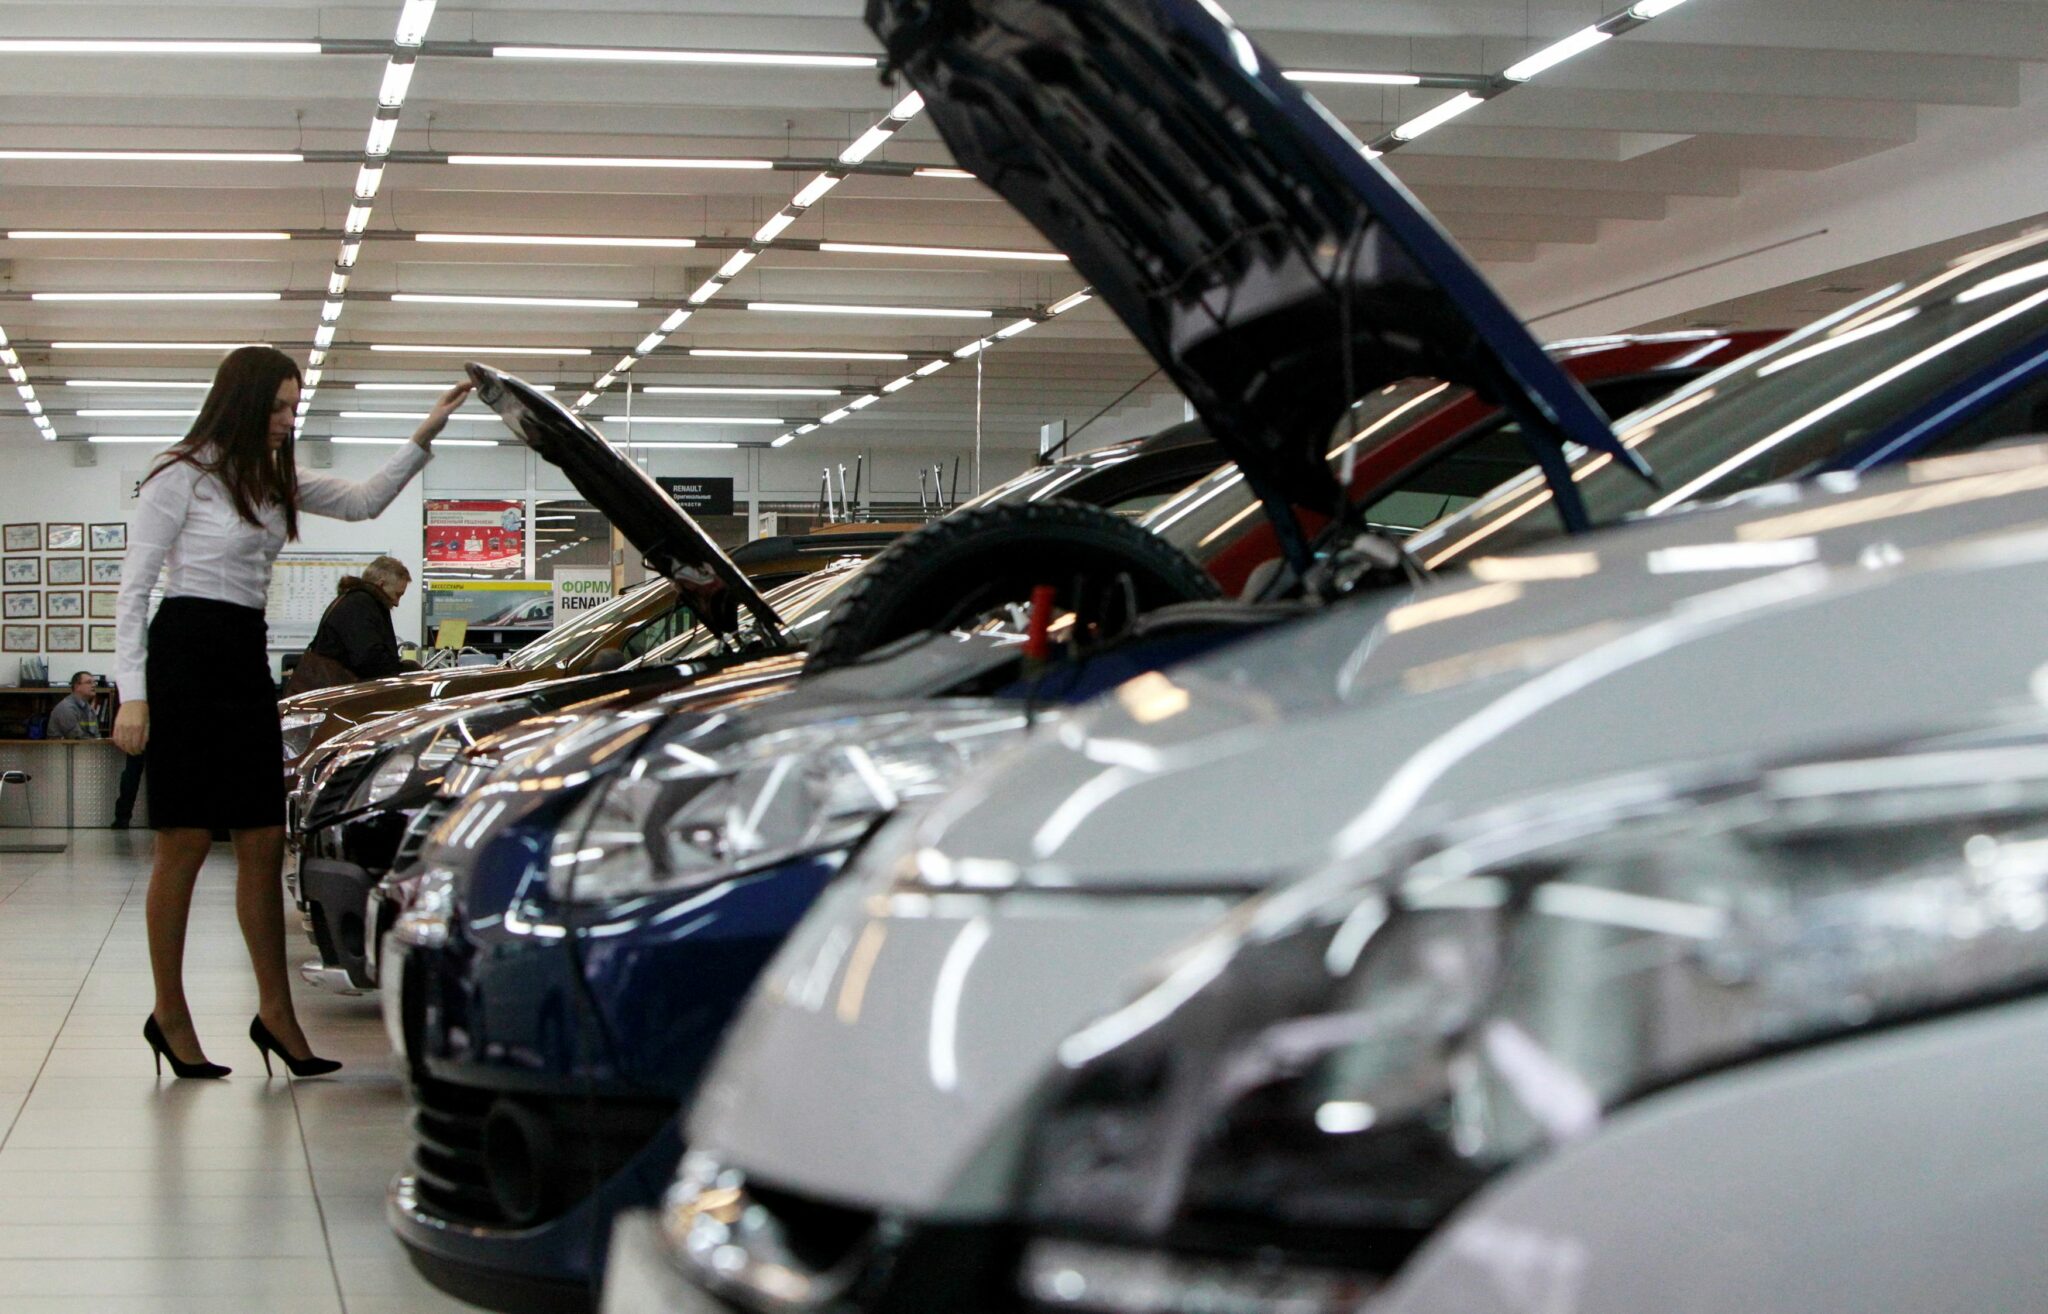 Салон продаж автомобилей  Renault в Москве. REUTERS/Scanpix/LETA